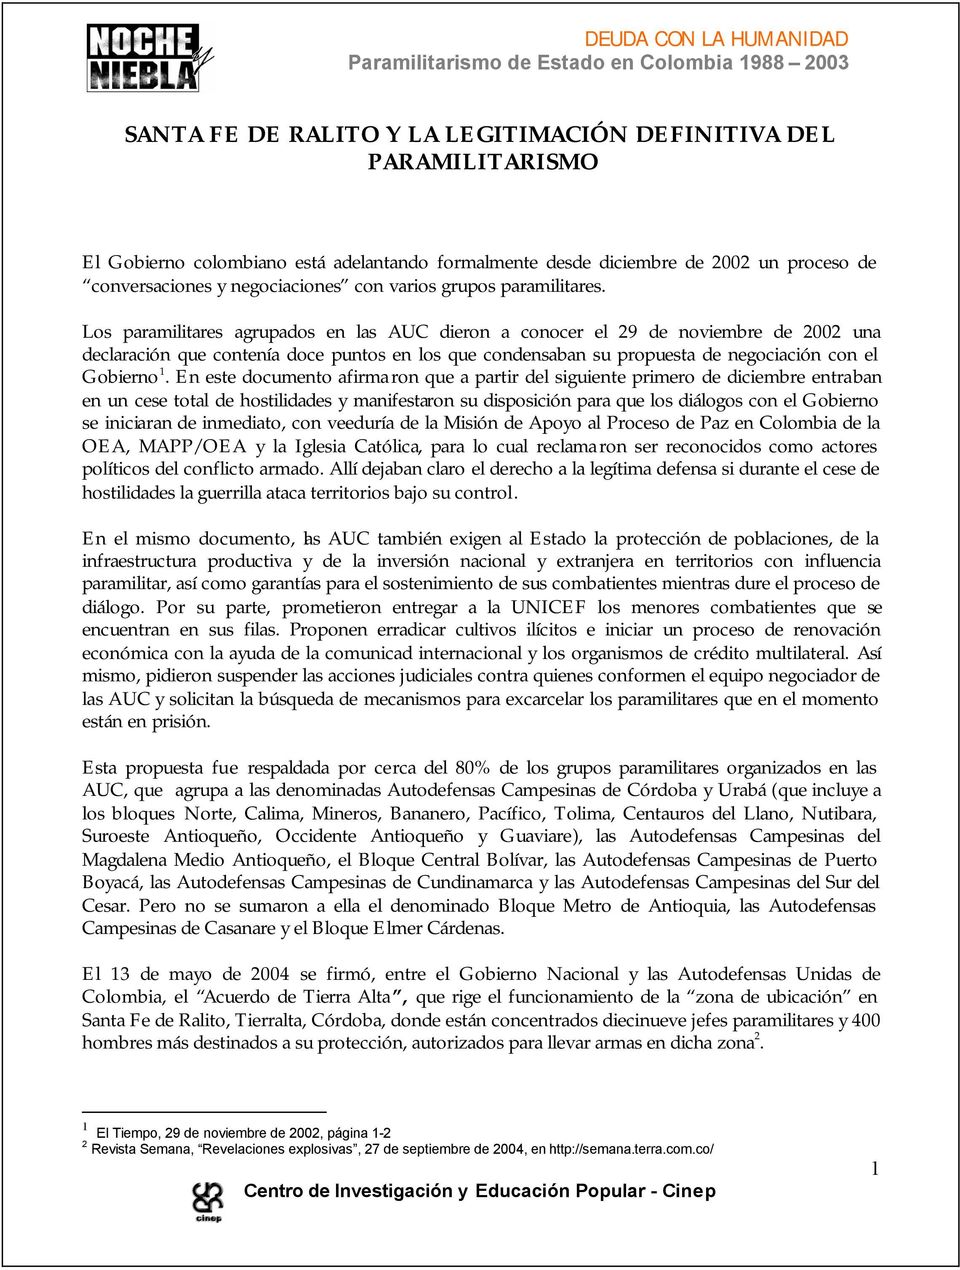 Los paramilitares agrupados en las AUC dieron a conocer el 29 de noviembre de 2002 una declaración que contenía doce puntos en los que condensaban su propuesta de negociación con el Gobierno 1.